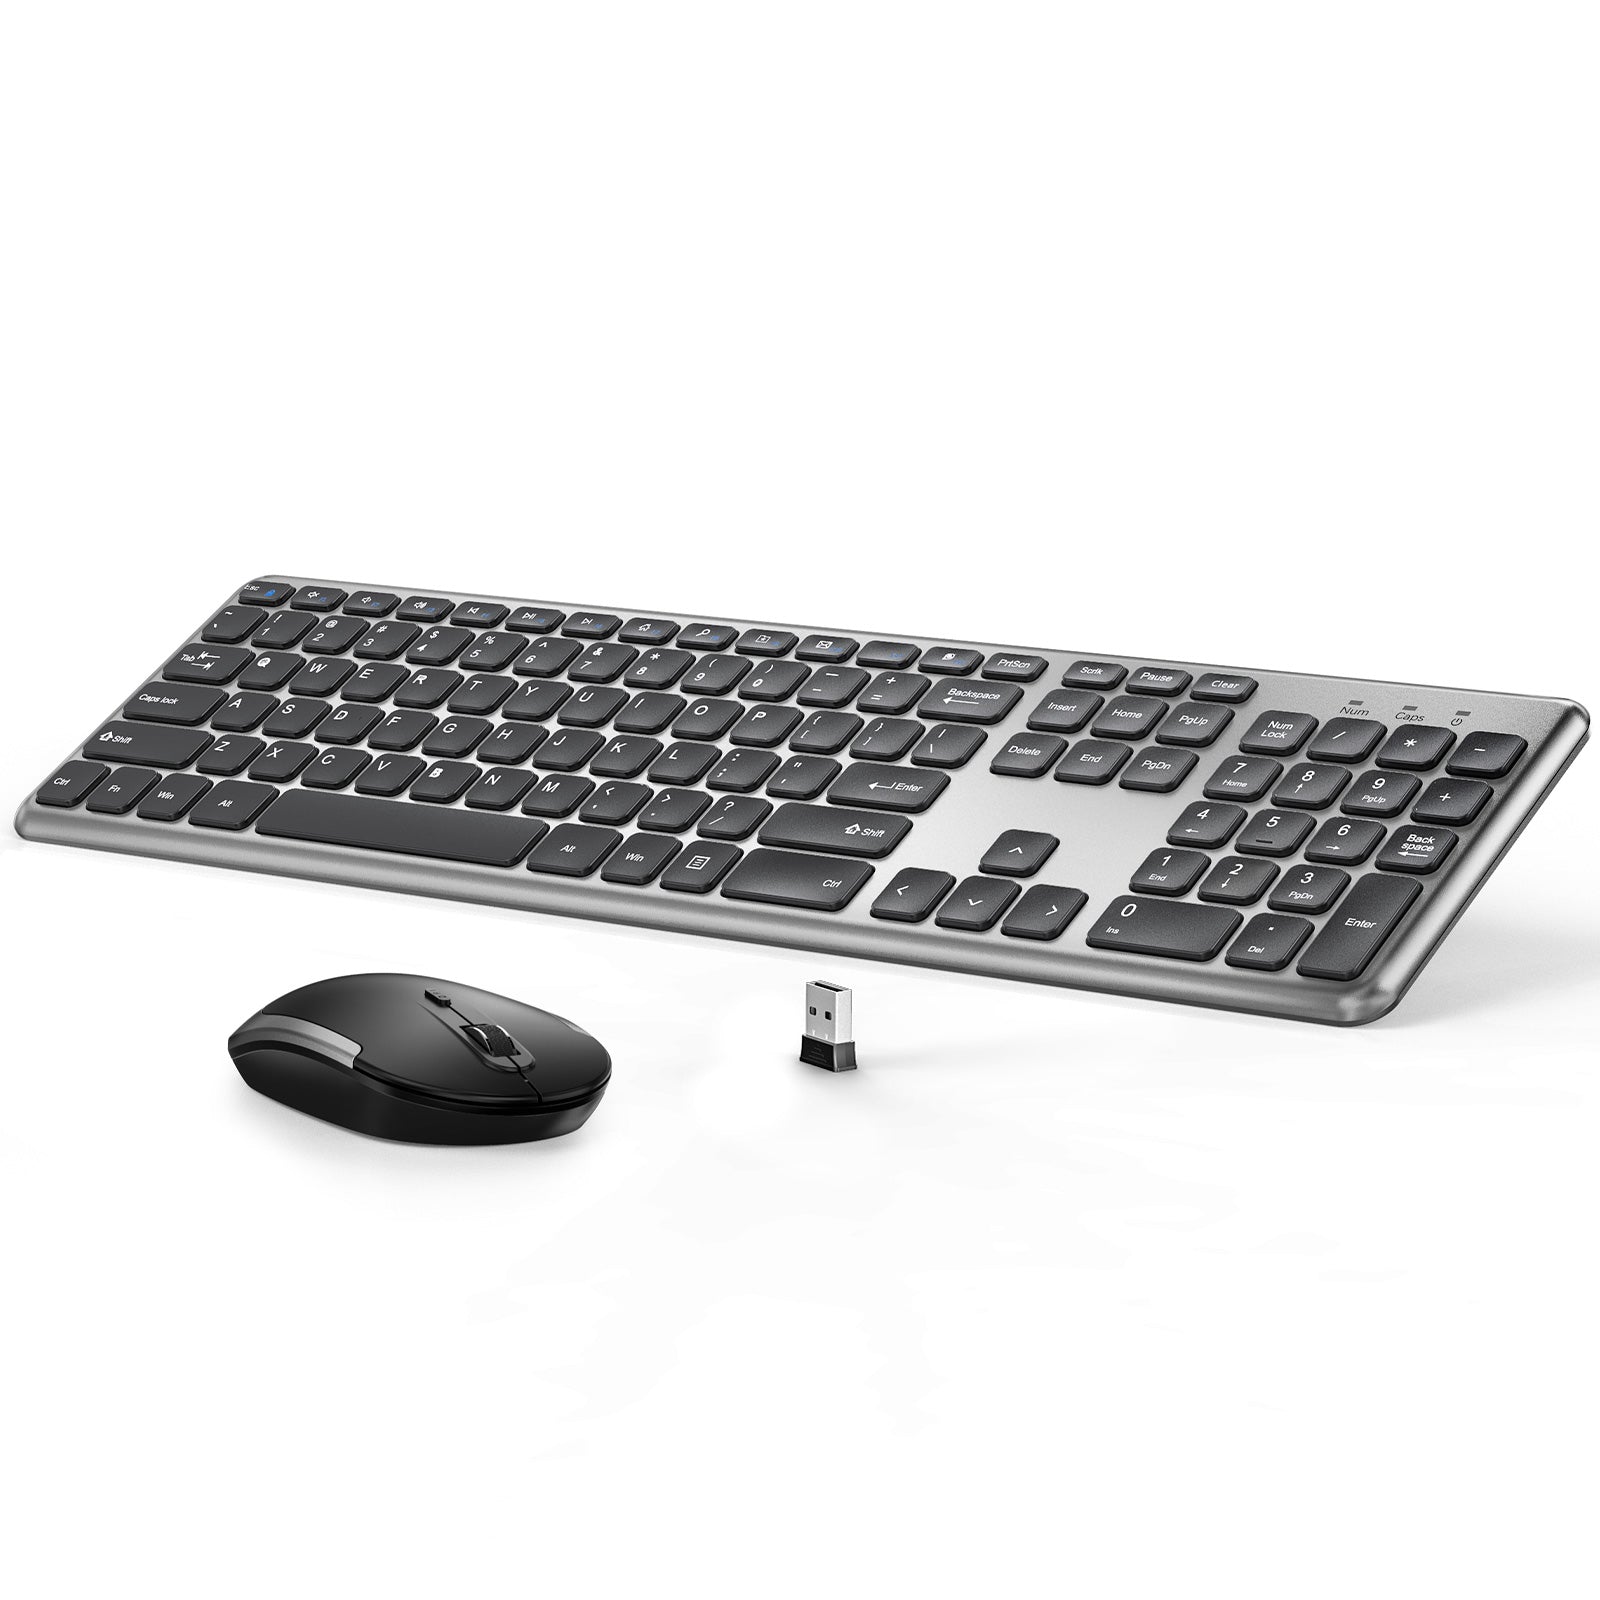 KUT027 Ultra-Slim Wireless Keyboard & Mouse Combo